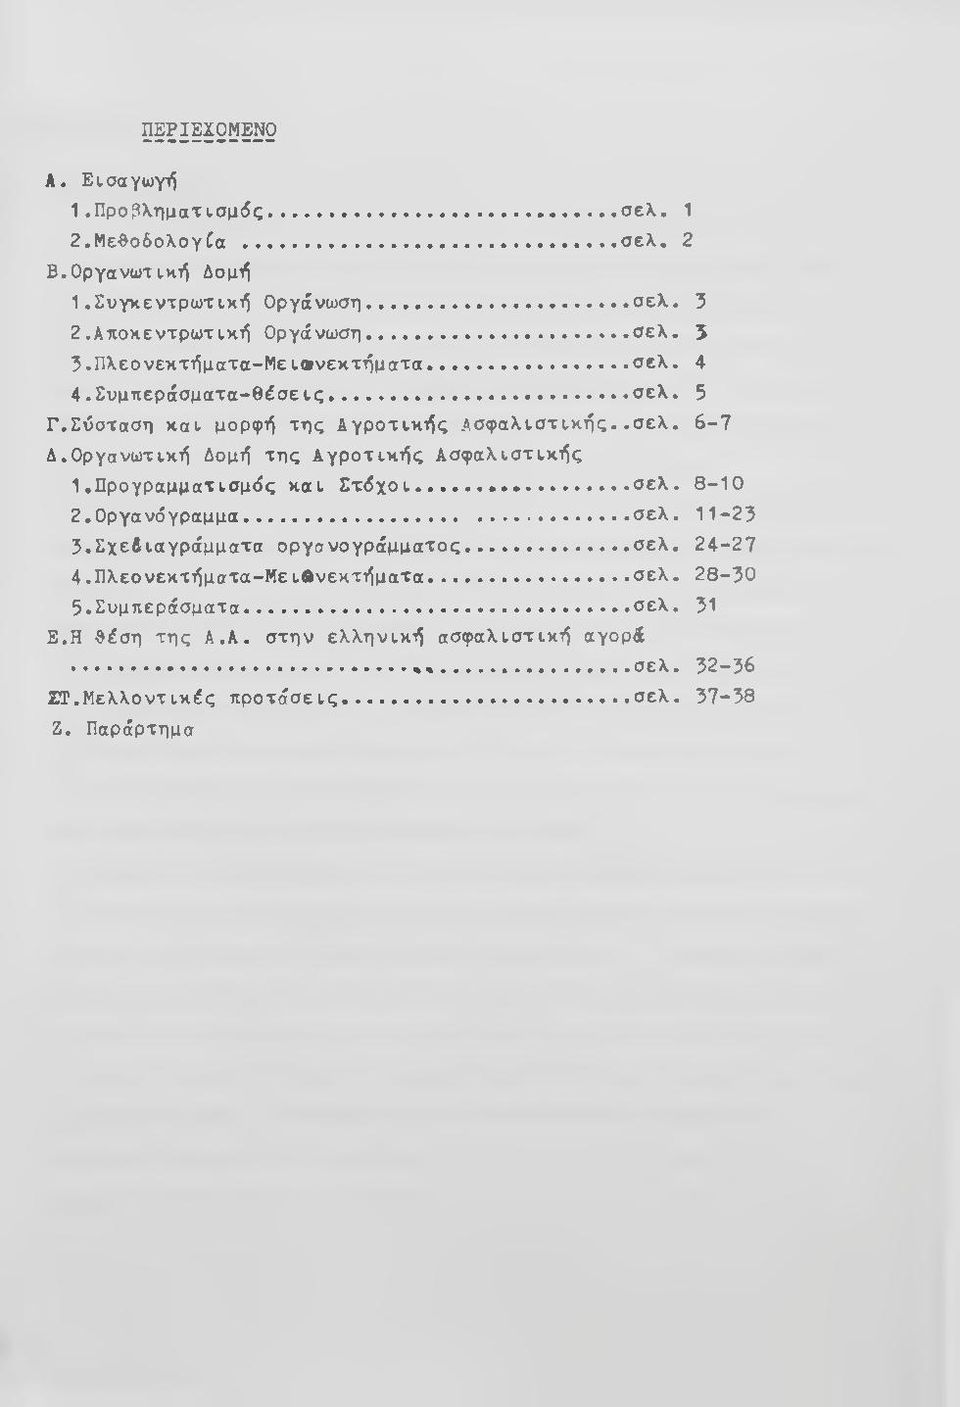 Οργανωτική Δομή της Αγροτικής Ασφαλιστικής 1.Προγραμματισμός και Σ τόχοι... σελ. 8-10 2. Οργανόγραμμα... σελ. 11-23 3. Σχεδιαγράμματα οργανογράμματος... σελ. 24-27 4.